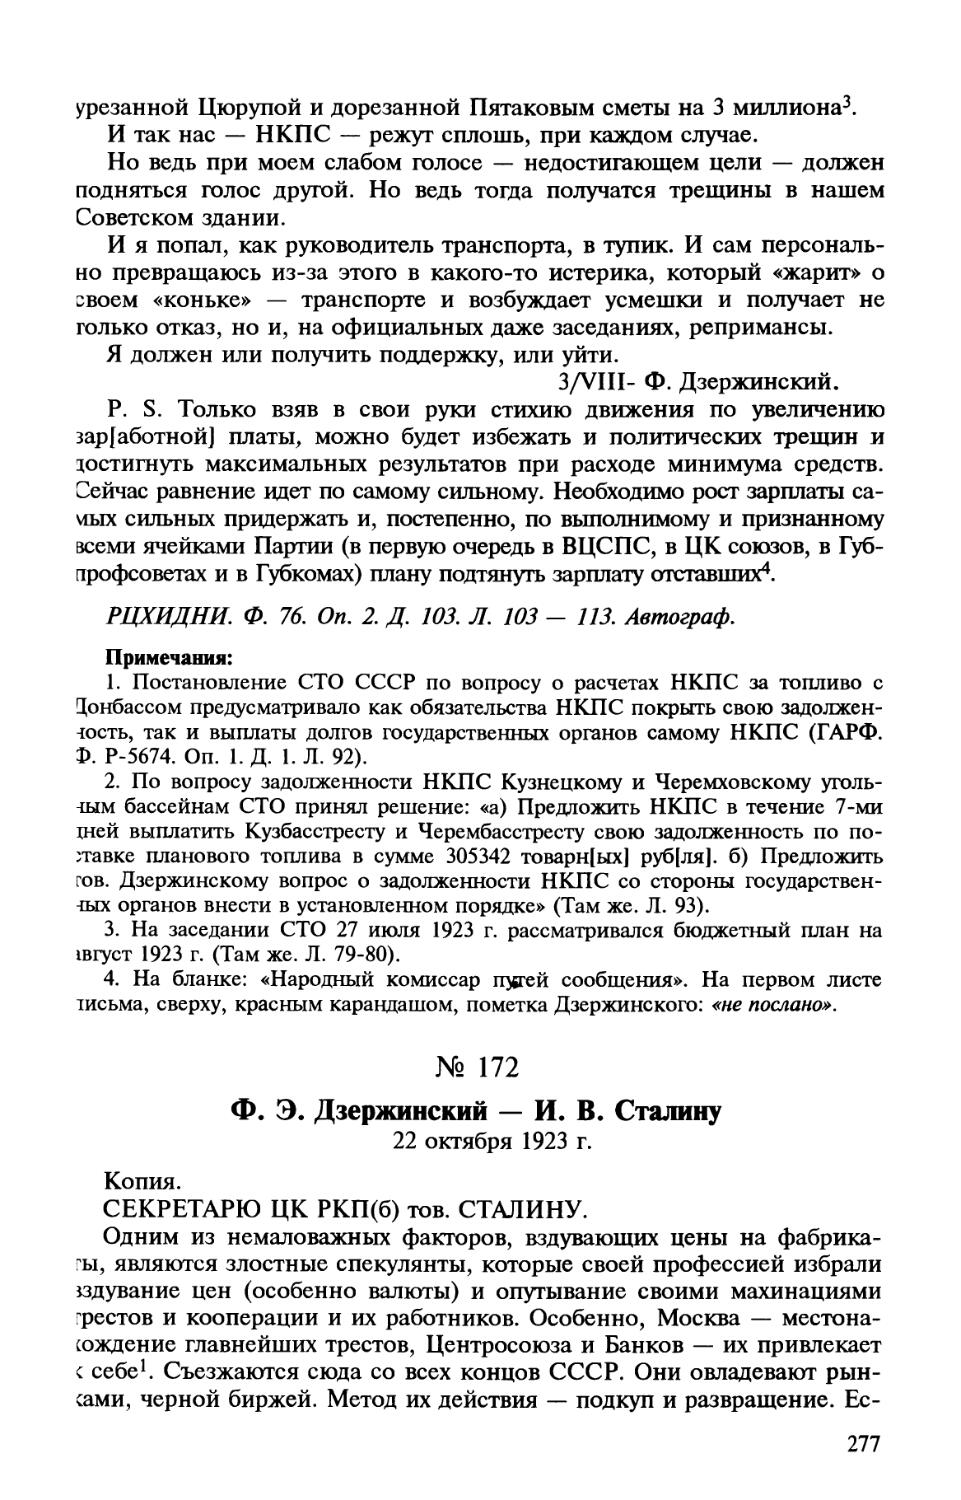 172. Ф. Э. Дзержинский — И. В. Сталину. 22 октября 1923 г.